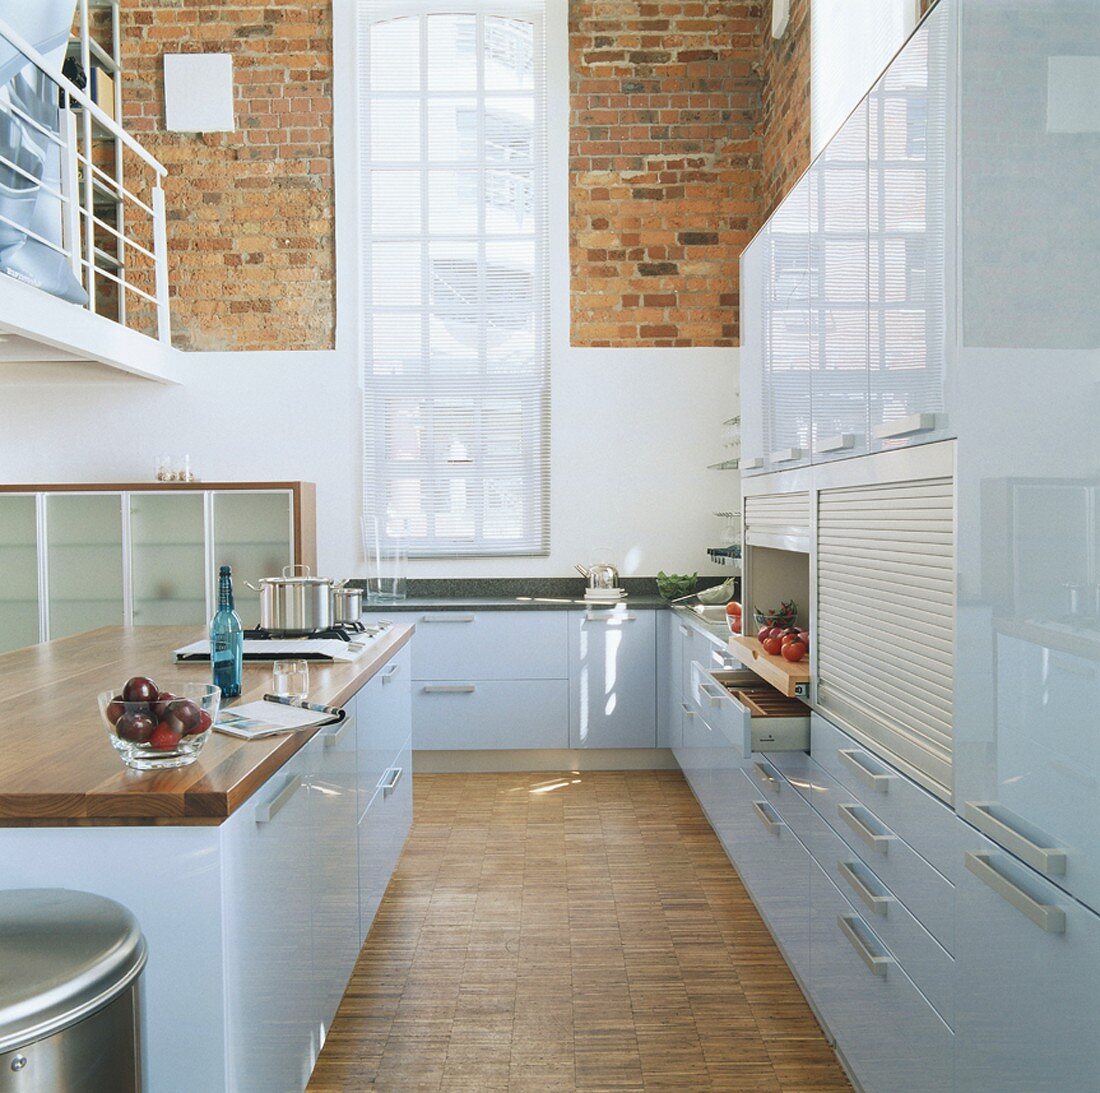 Blick in eine hellblaue Hochglanzküche mit hohem Sprossenfenster und Backsteinwänden